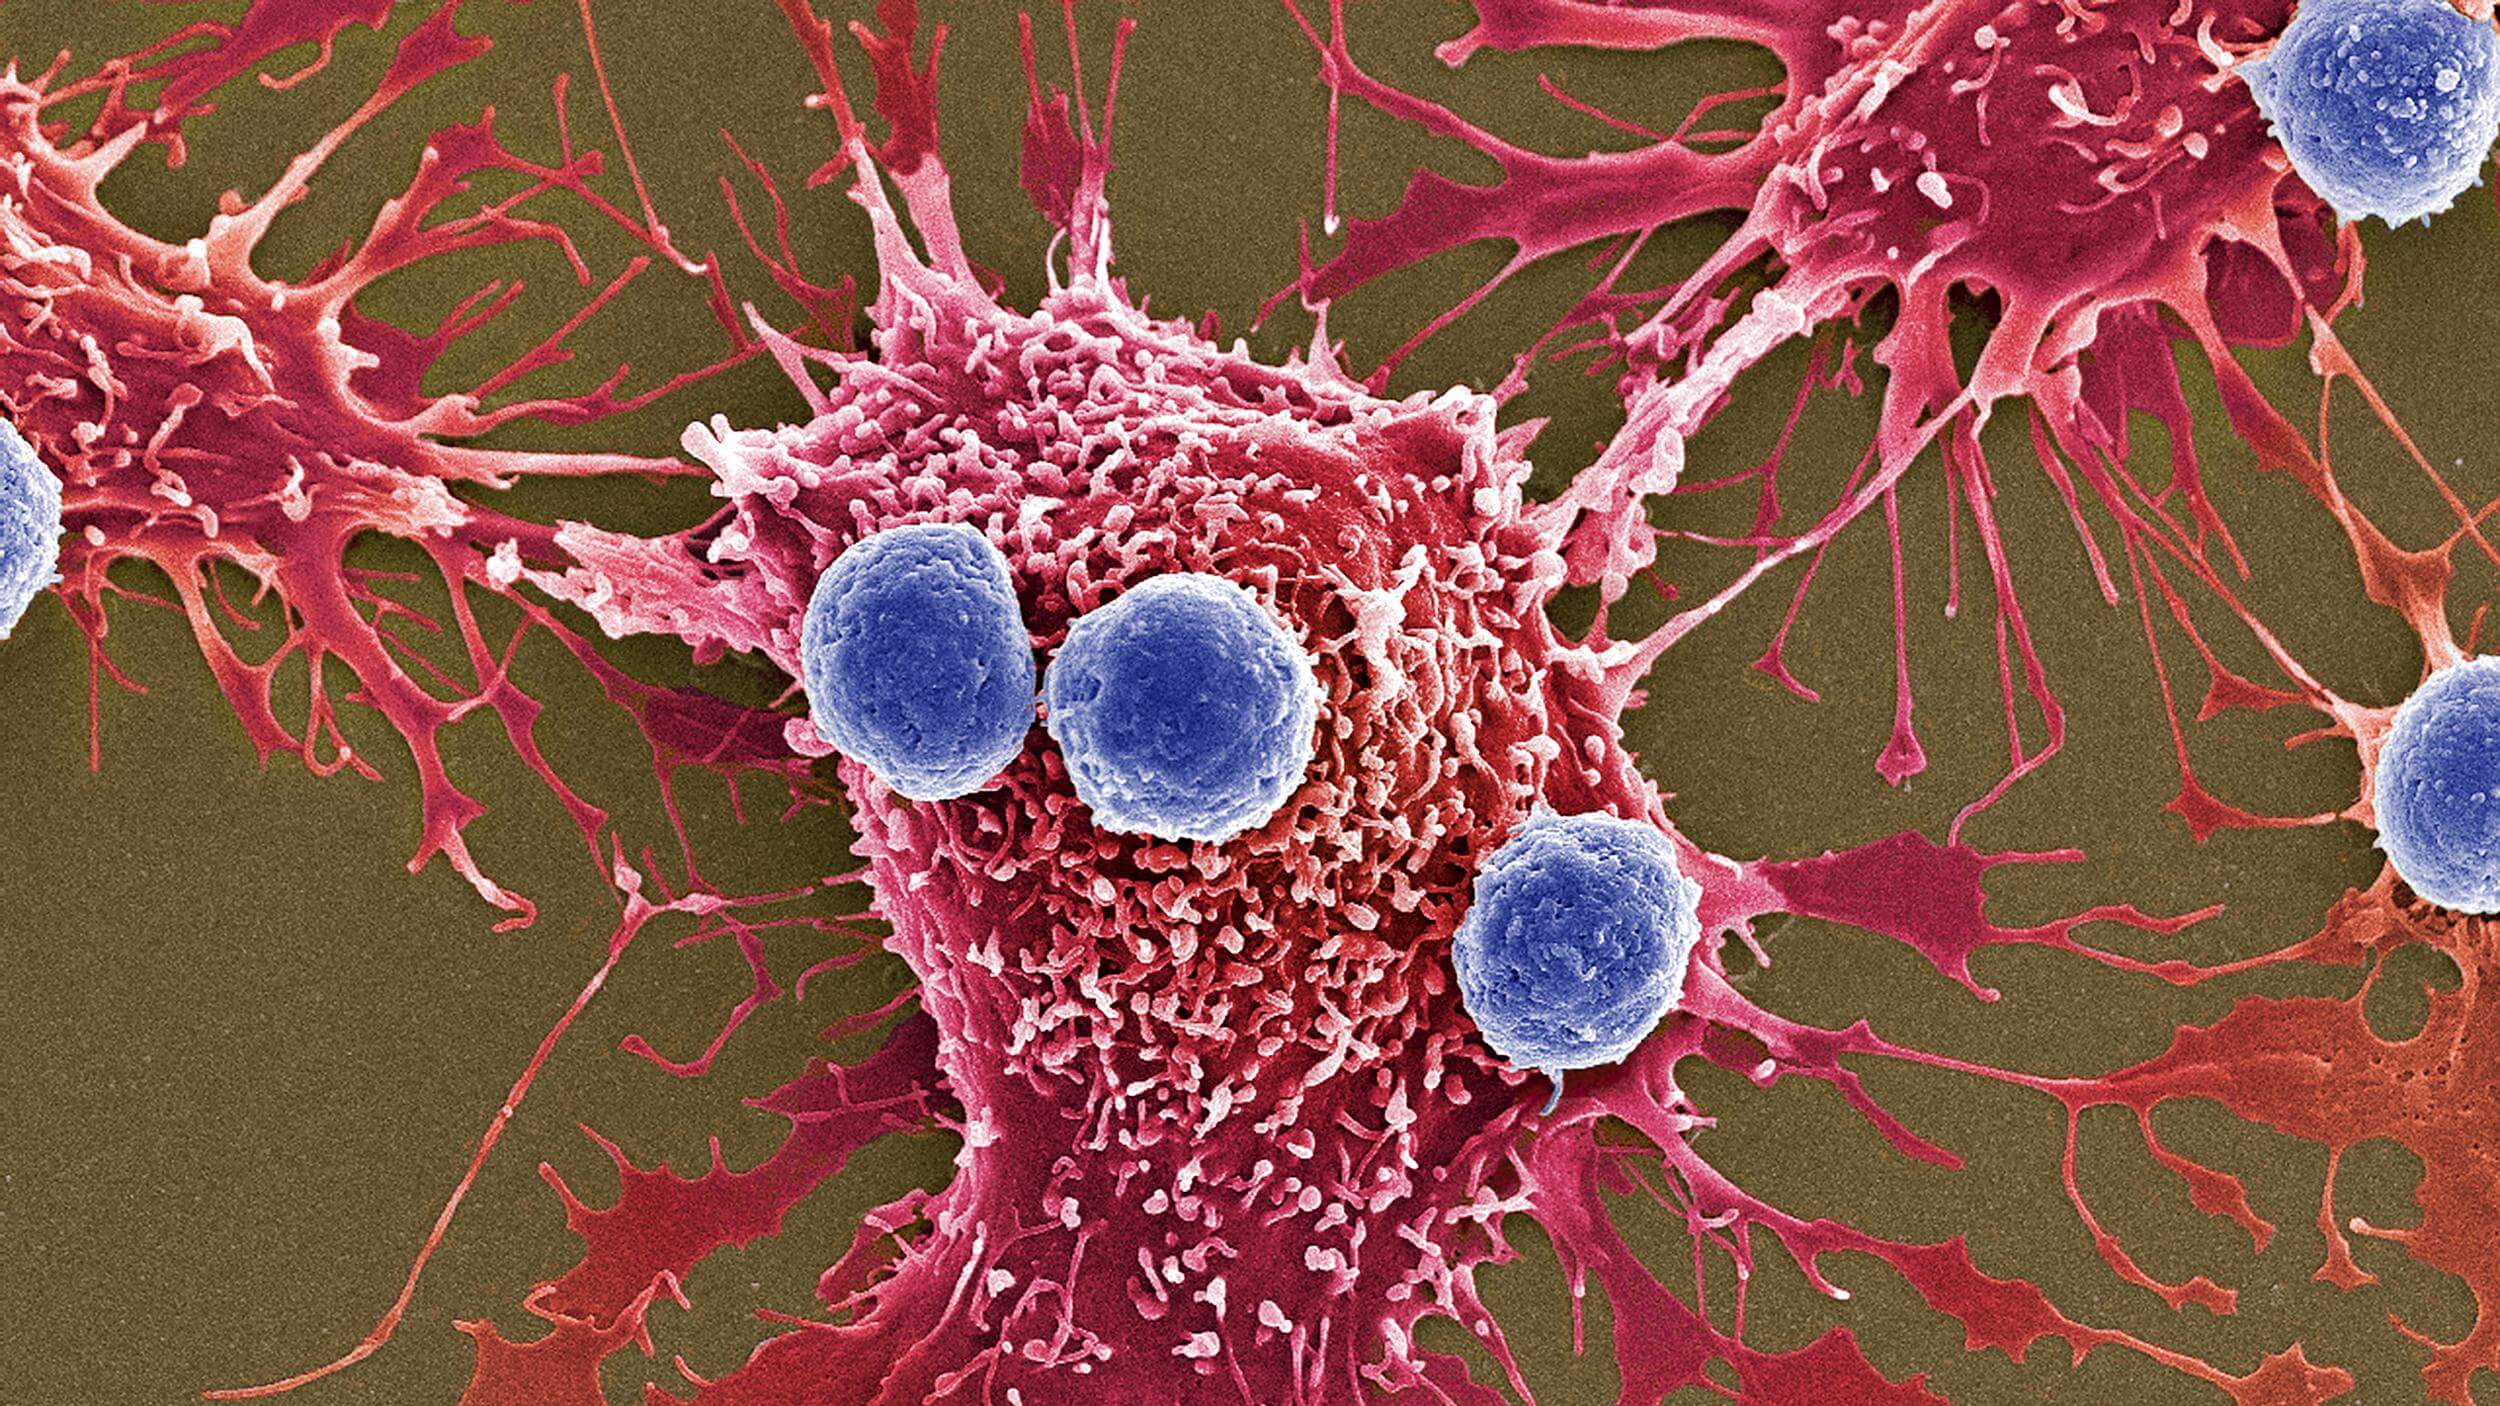 Zur Verbesserung der überlebensrate von Krebszellen fressen ihresgleichen